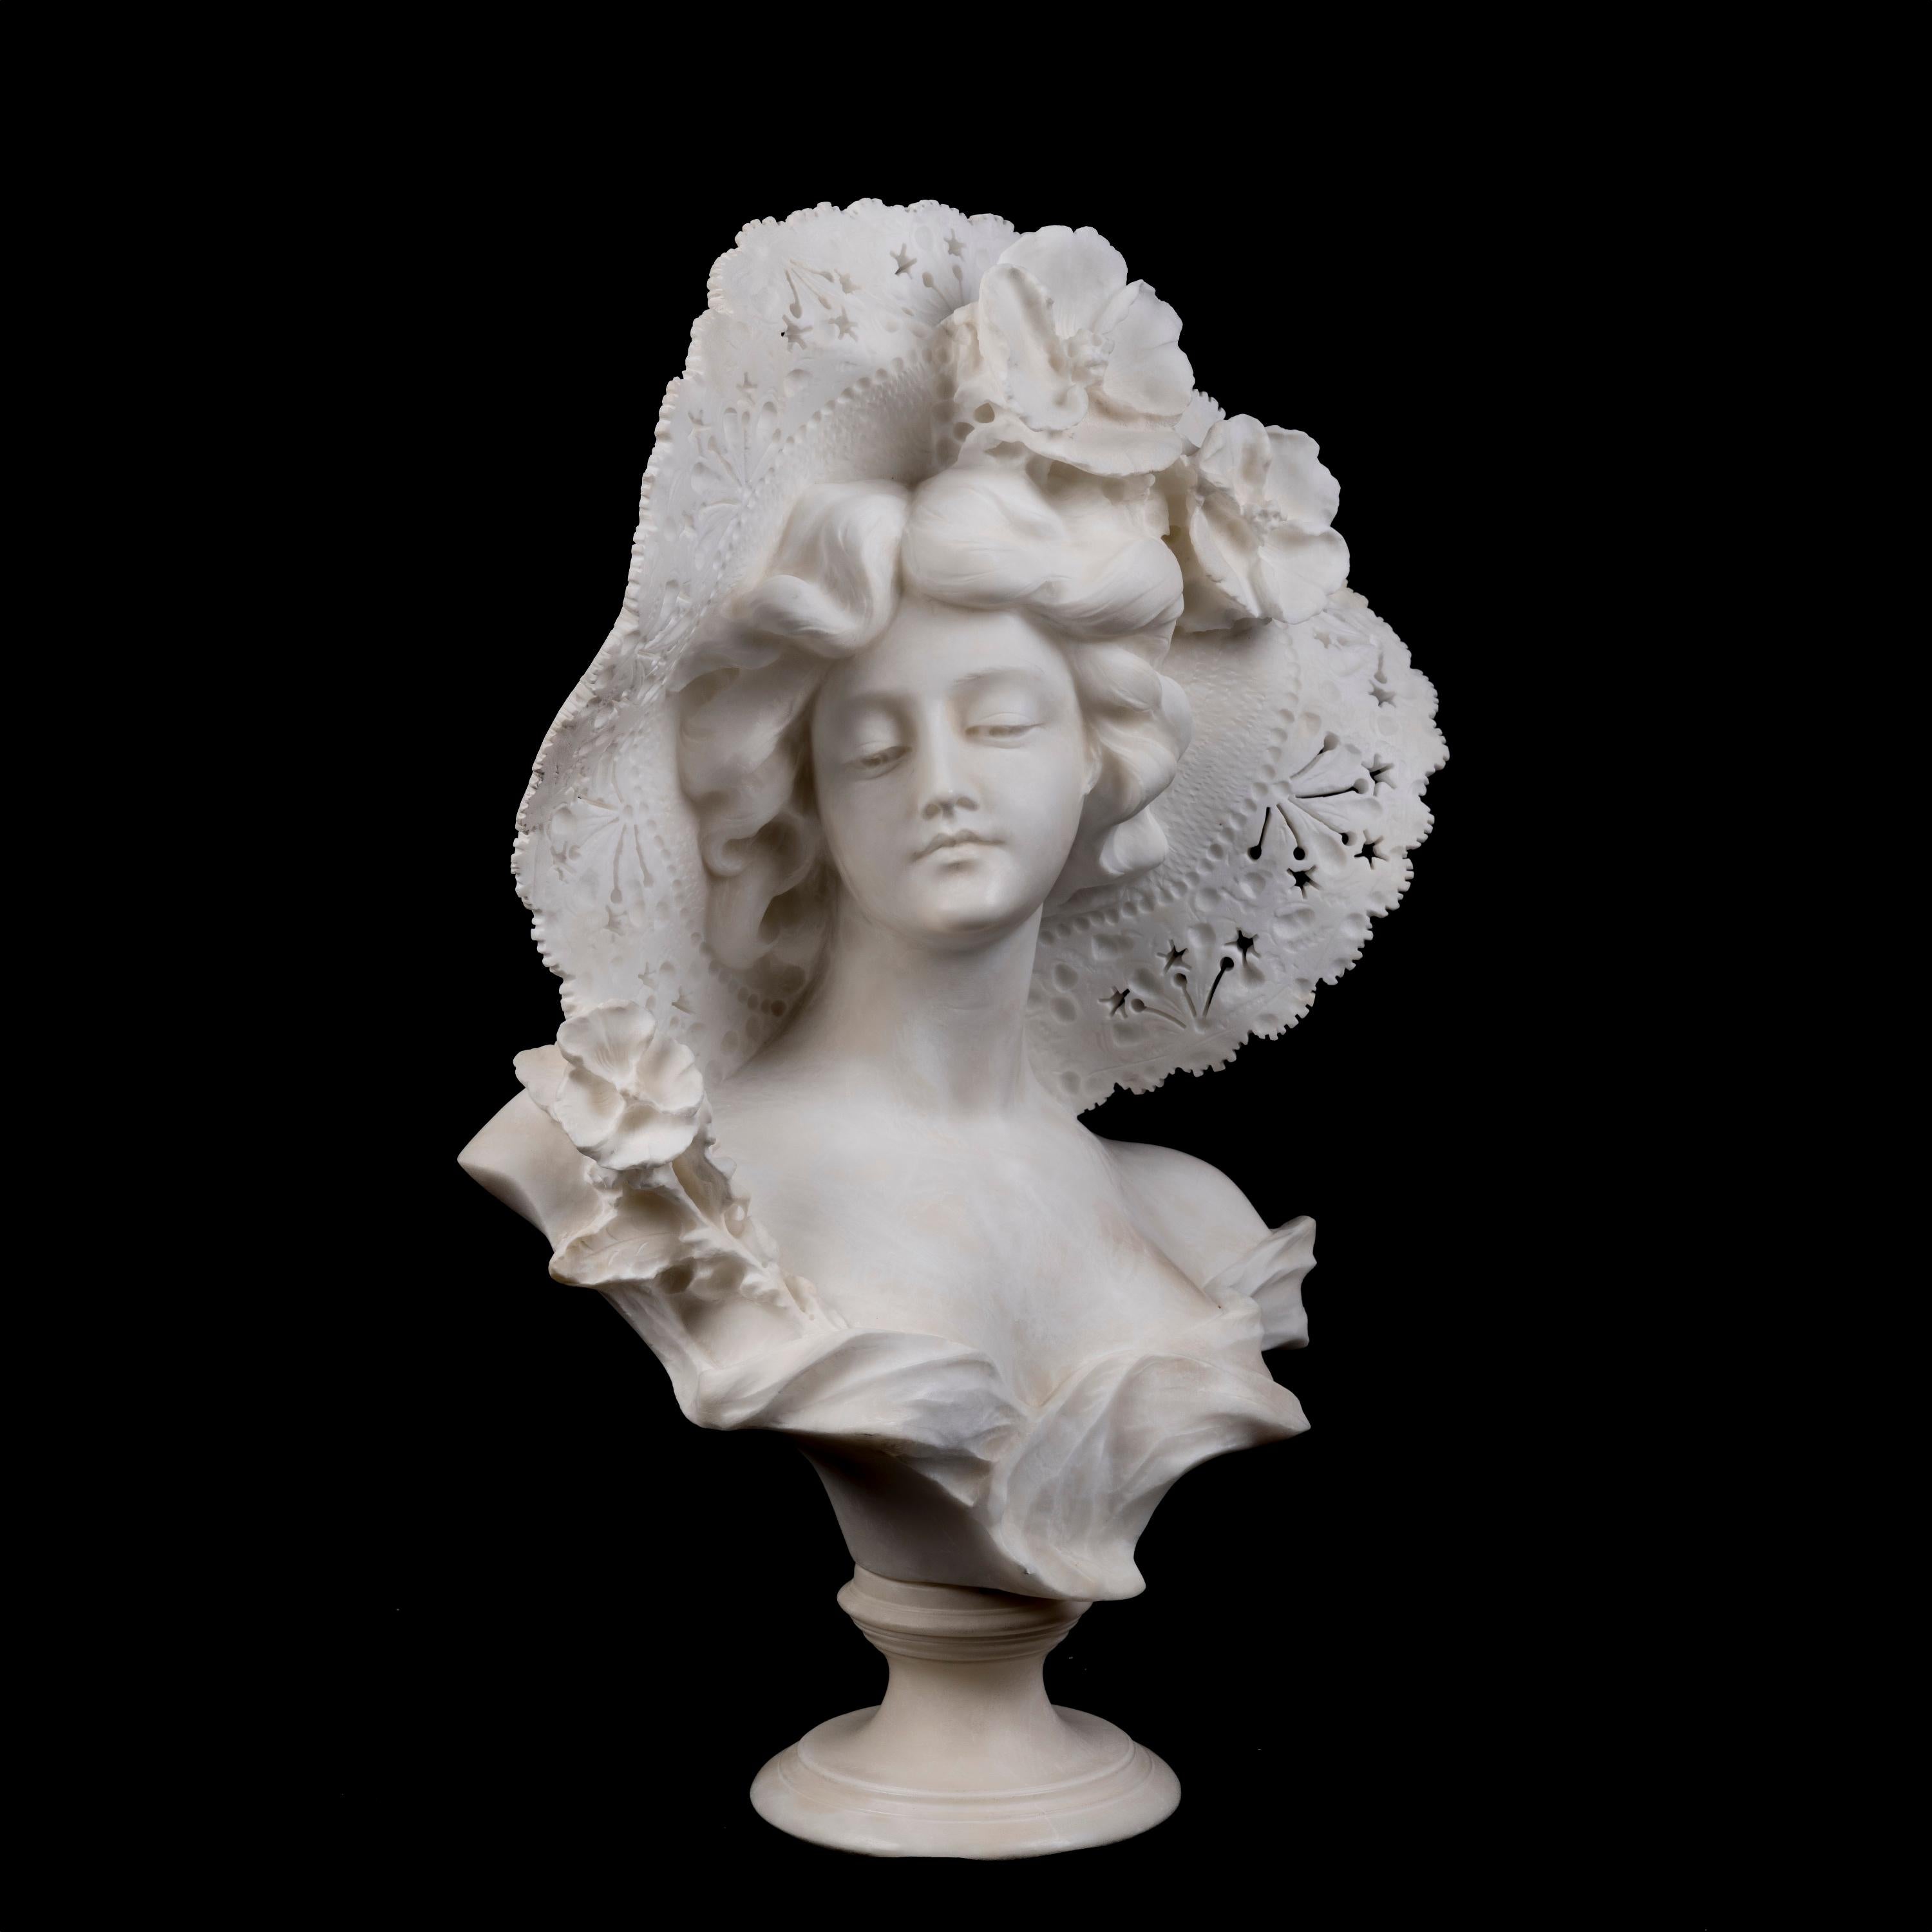 Alabasterbüste einer eleganten Dame
Adolfo Cipriani

Die auf einem Rundsockel ruhende Alabasterbüste stellt eine Dame dar, die einen modischen, mit Blumen geschmückten Hut trägt. Signiert 